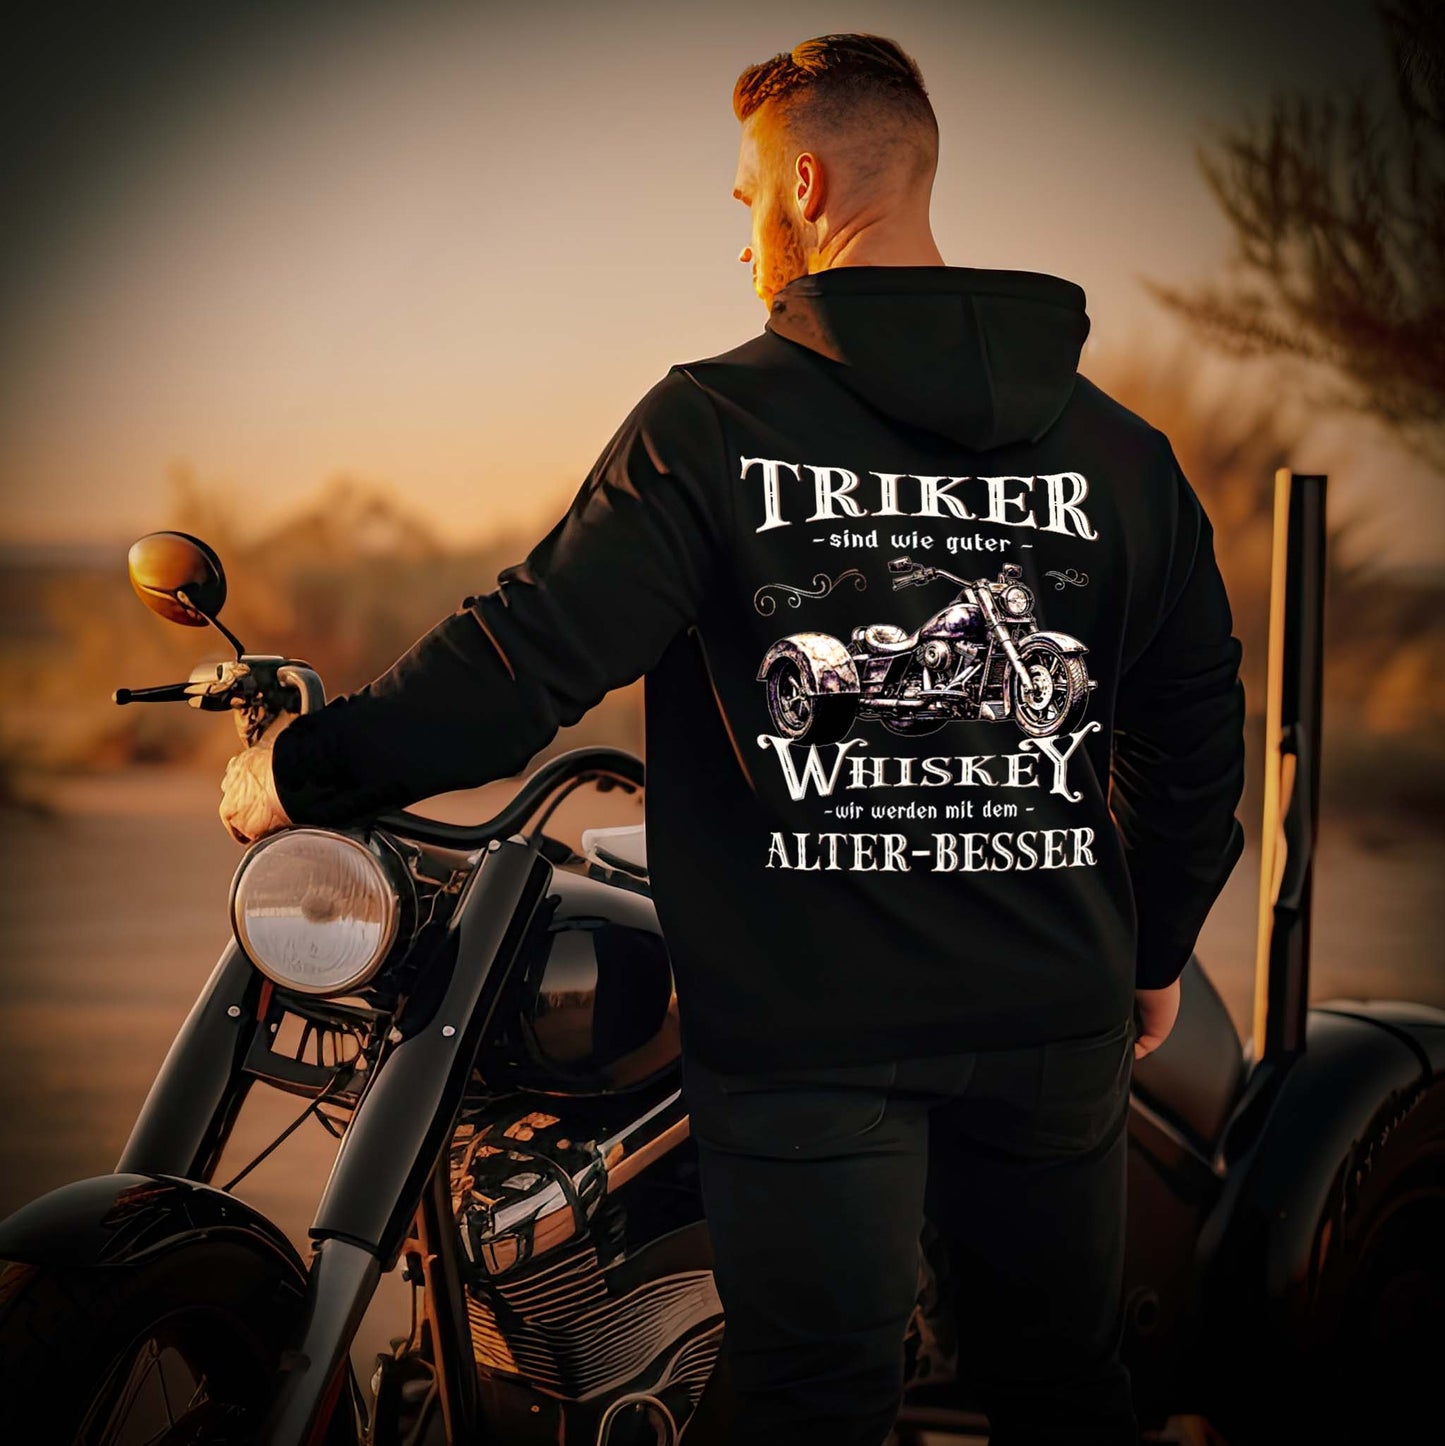 Ein Triker mit einer Reißverschluss-Jacke für Trike Fahrer von Wingbikers mit dem Aufdruck, Triker sind wie guter Whiskey - Wir werden mit dem Alter besser, in schwarz.